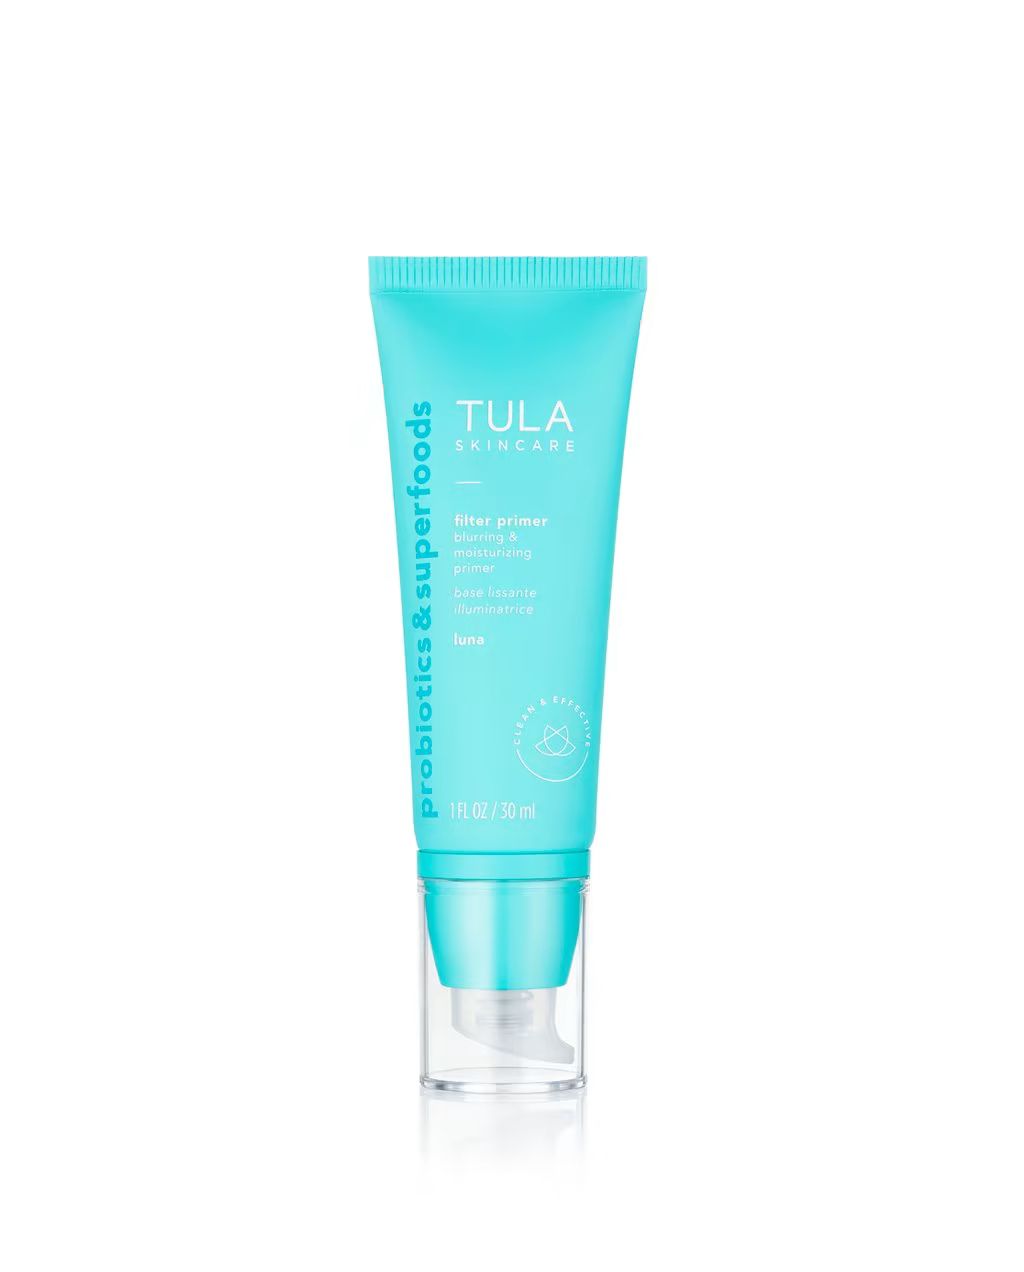 blurring & moisturizing primer (sheerly tinted) | Tula Skincare